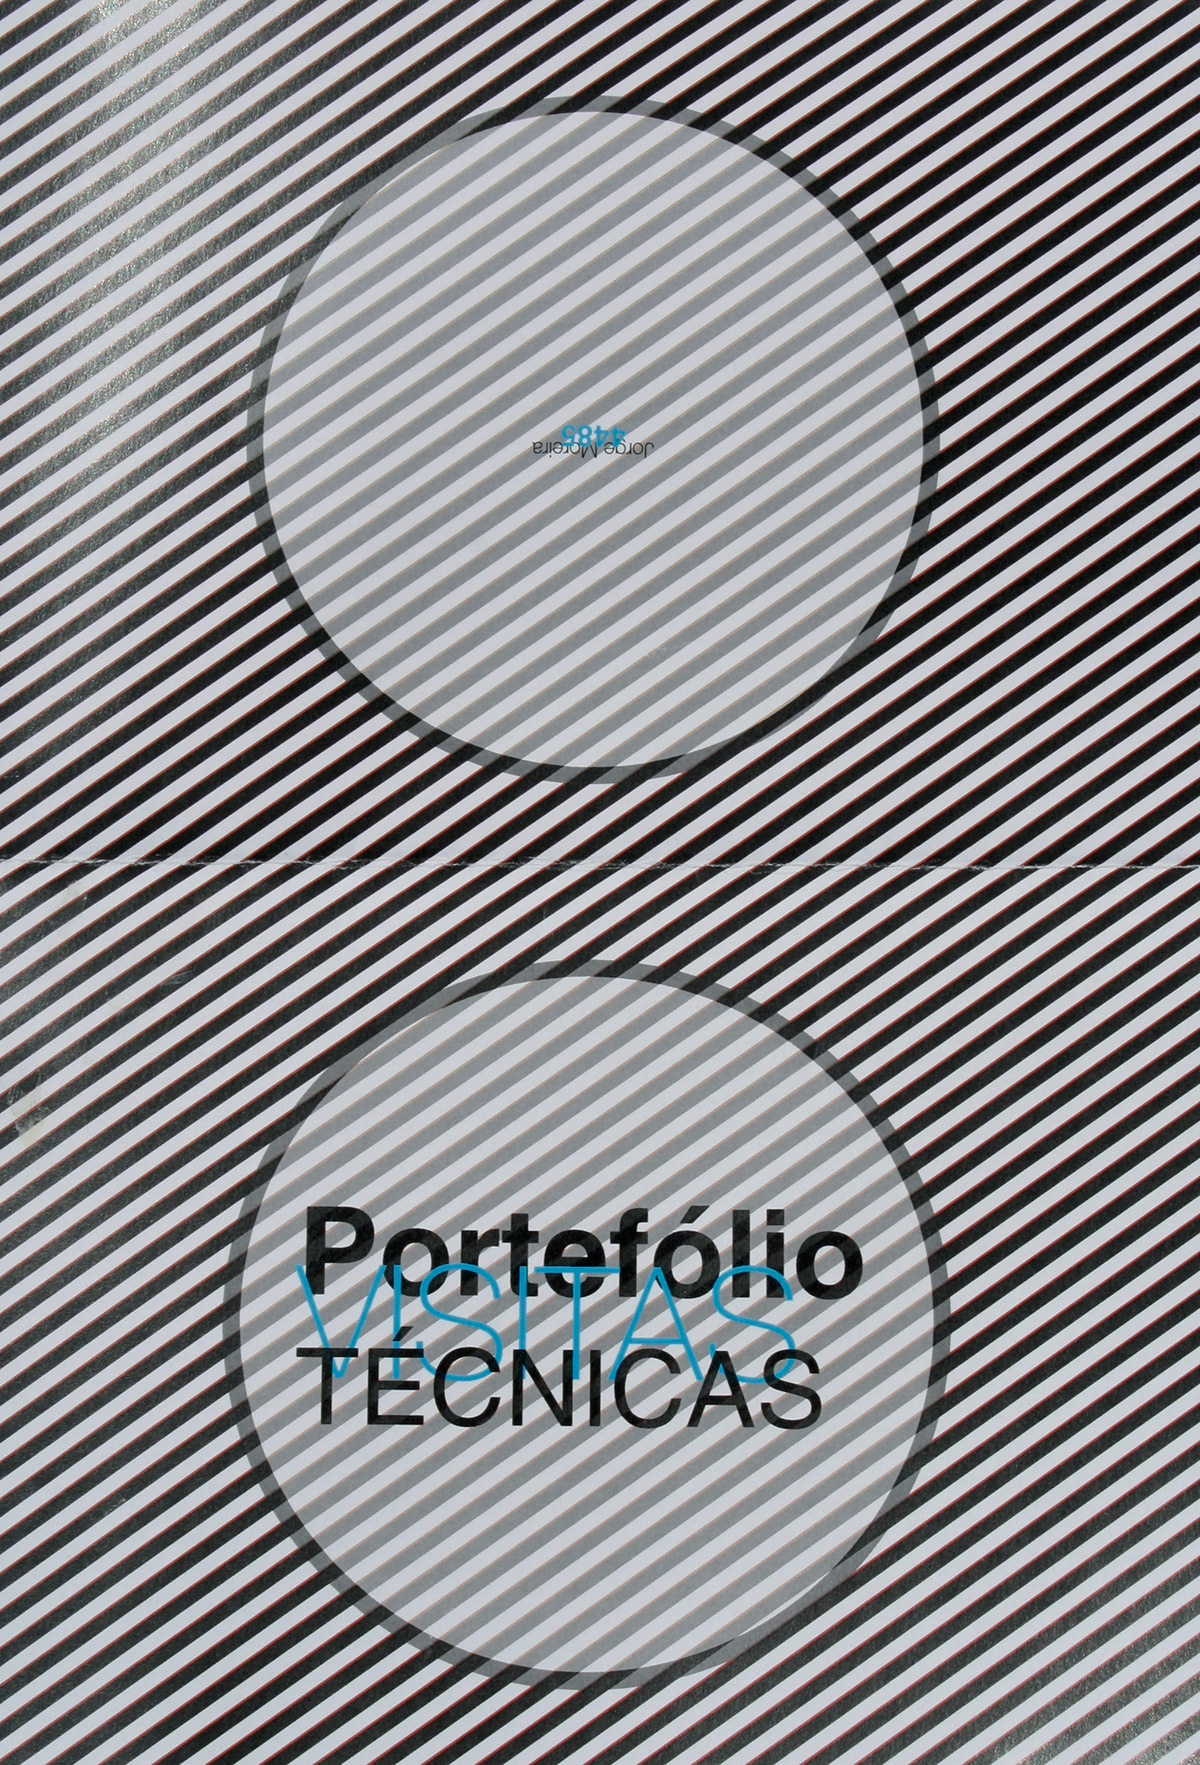 Jorge Moreira IPCA Visitas Técnicas produção gráfica print editorial